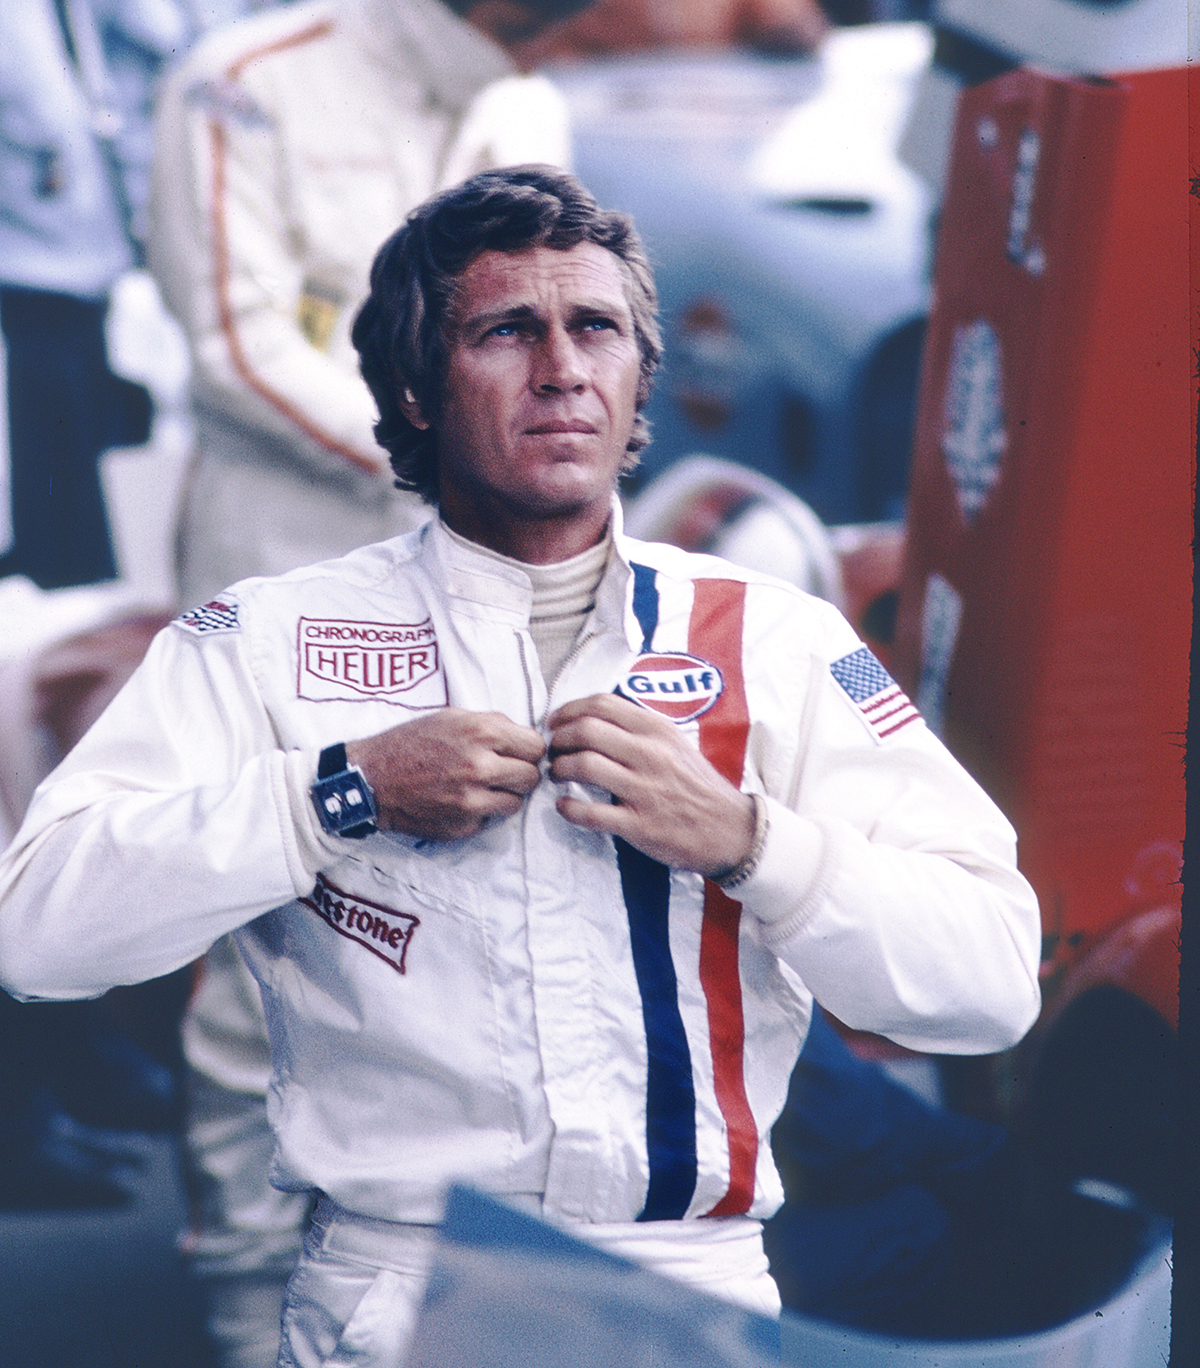 Actor Steve McQueen wearing racing gear